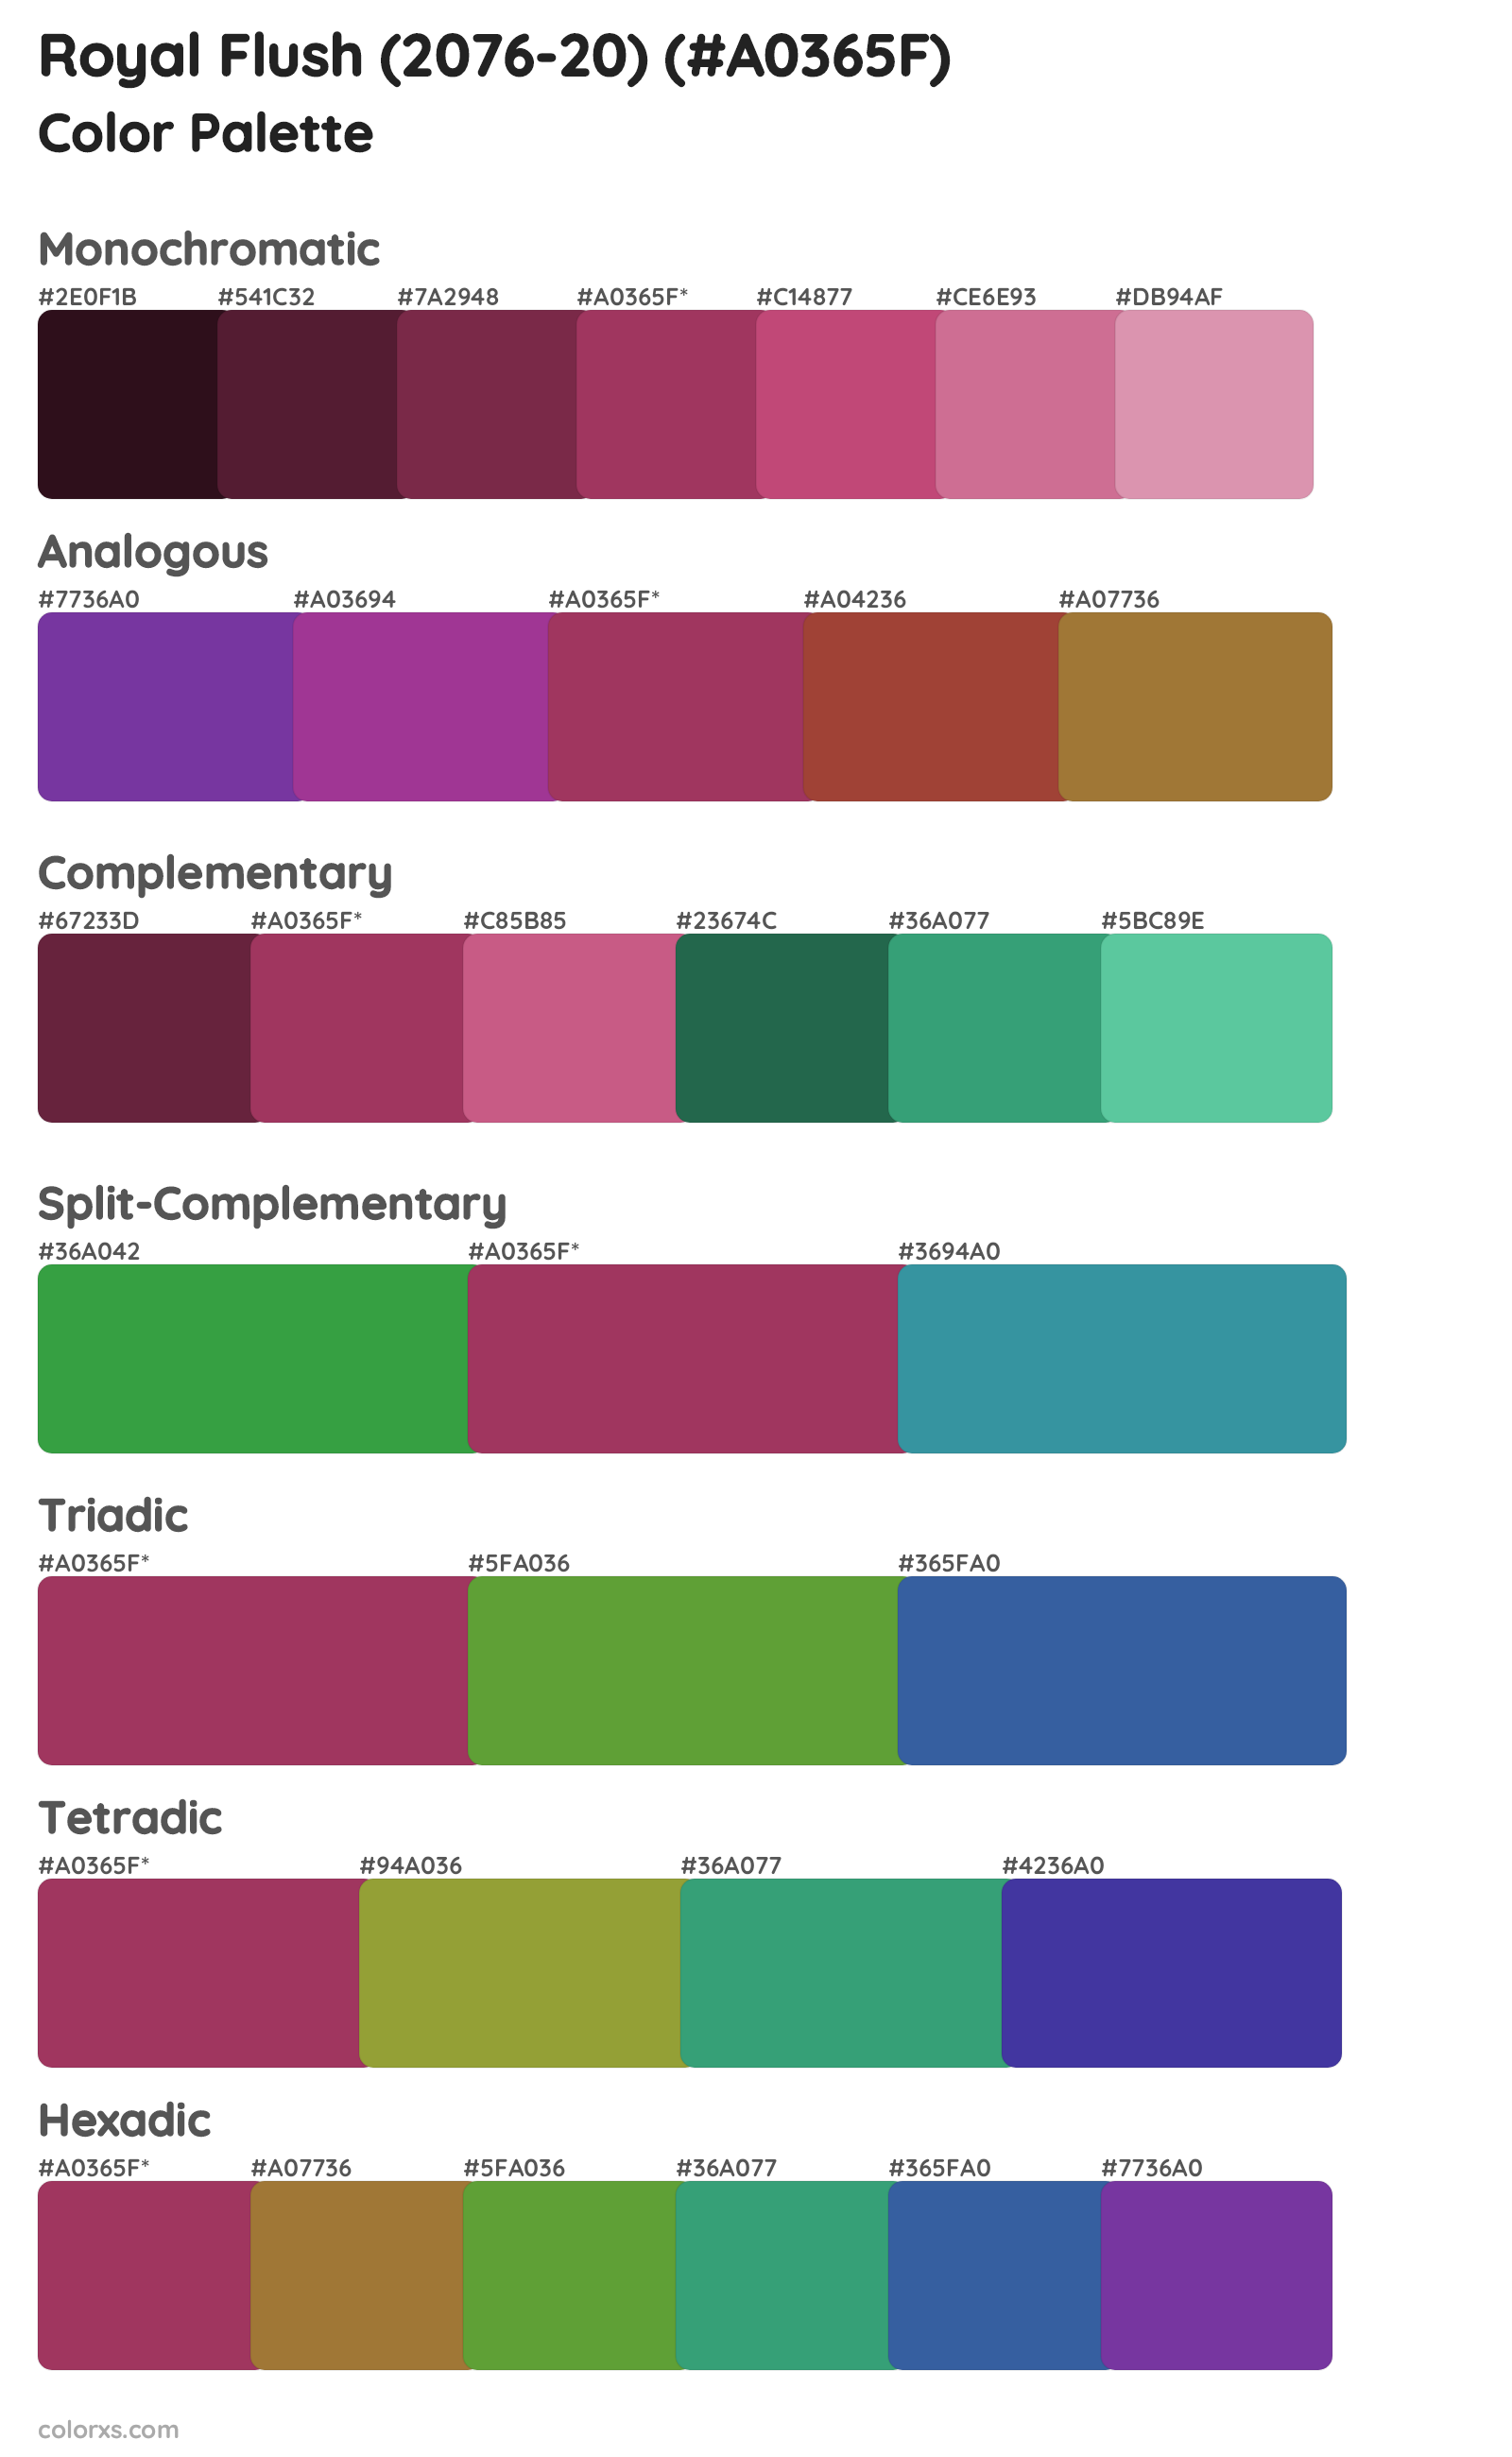 Royal Flush (2076-20) Color Scheme Palettes